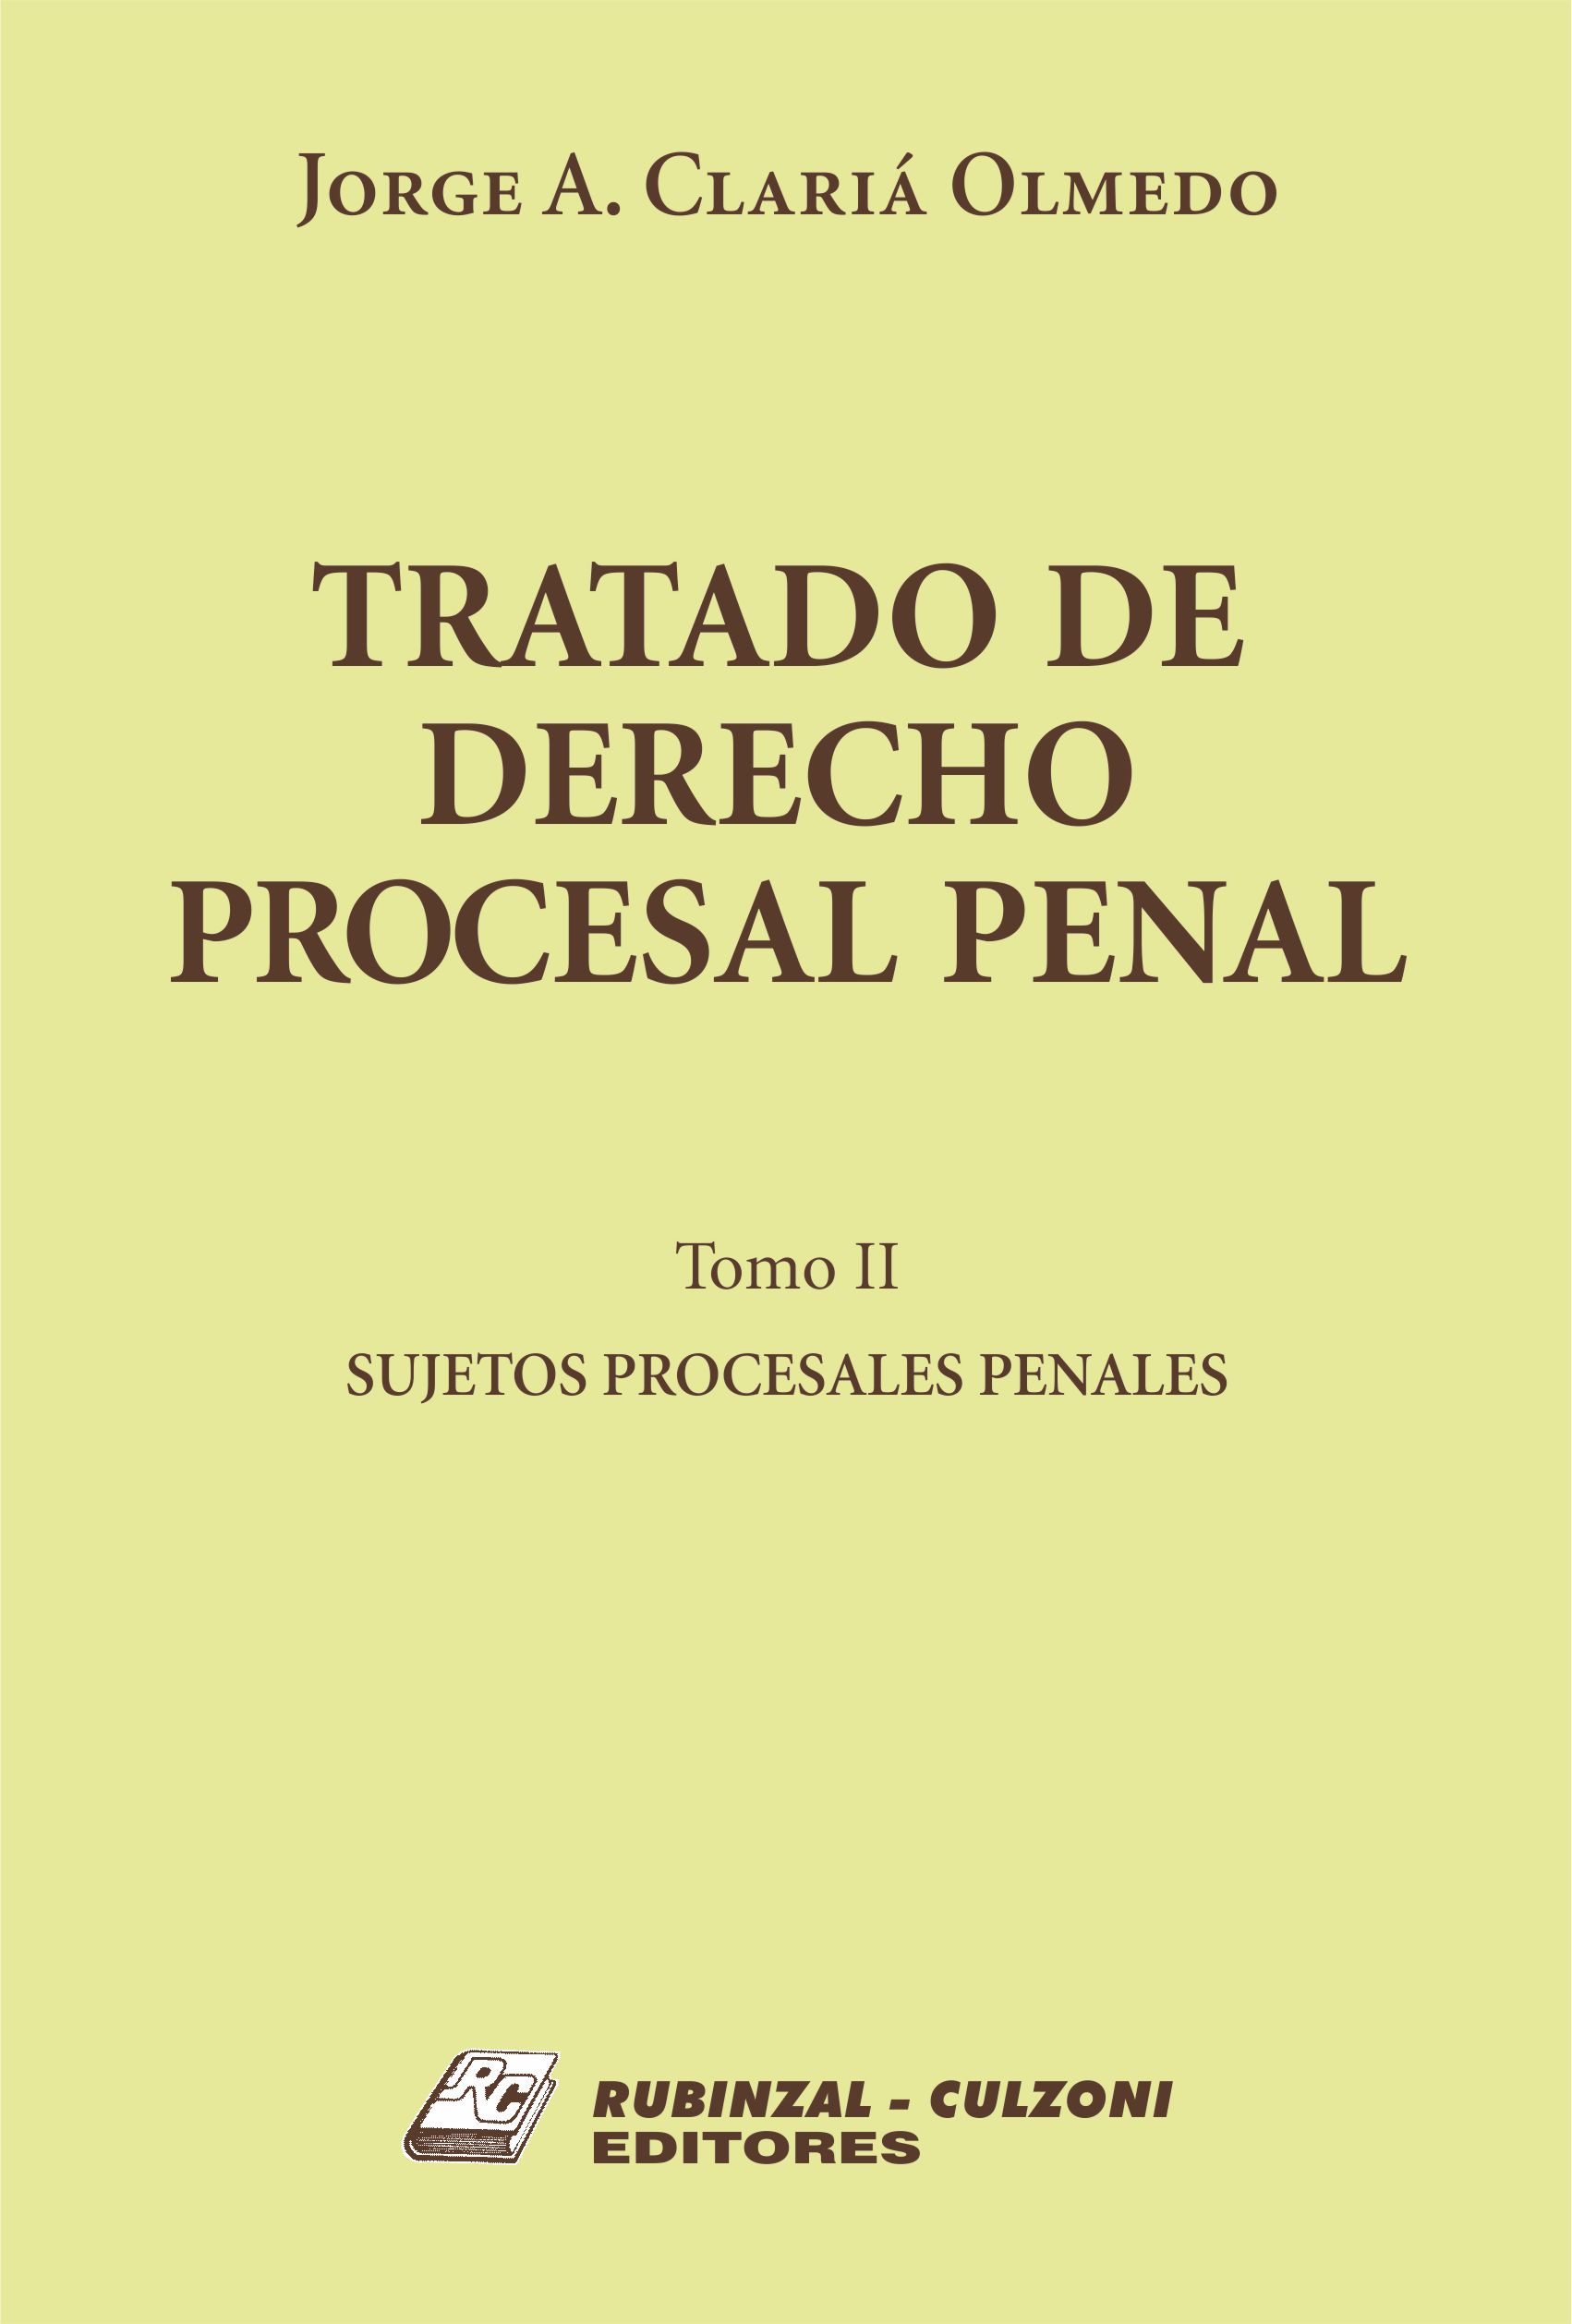 Tratado de Derecho Procesal Penal. - Tomo II. Sujetos procesales penales.